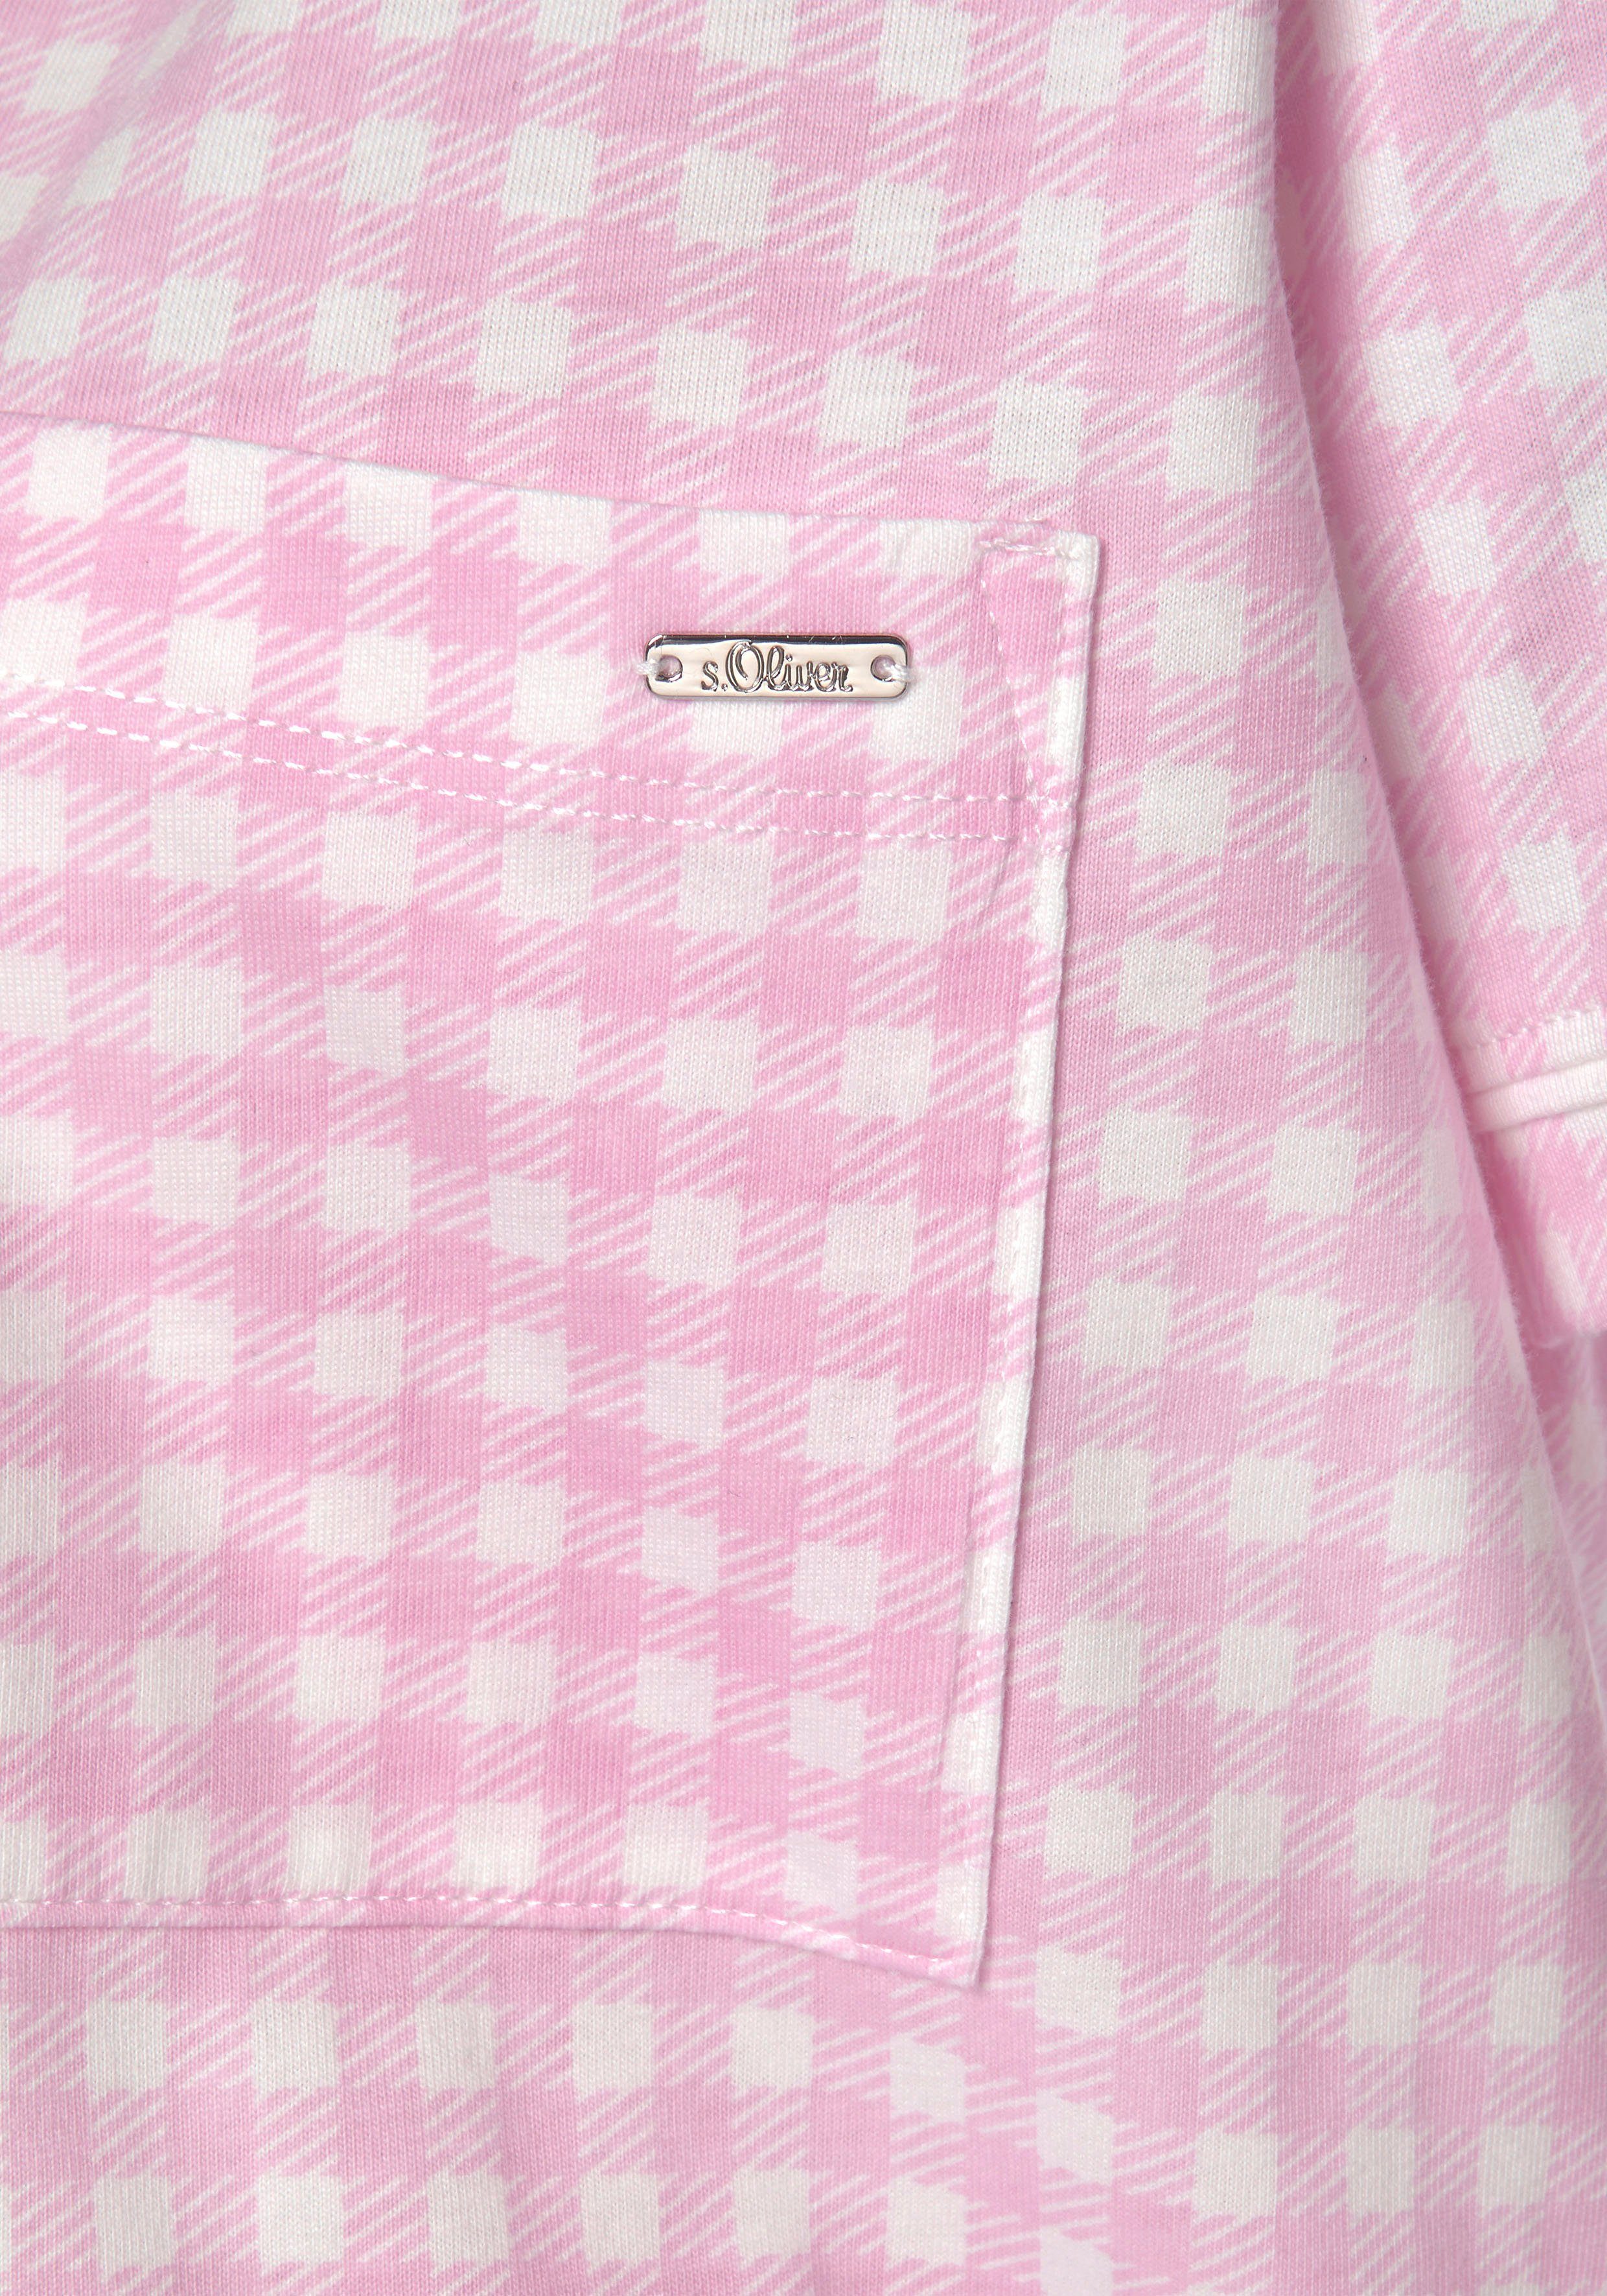 Nachthemd Brusttasche mit rosa-kariert aufgesetzter s.Oliver